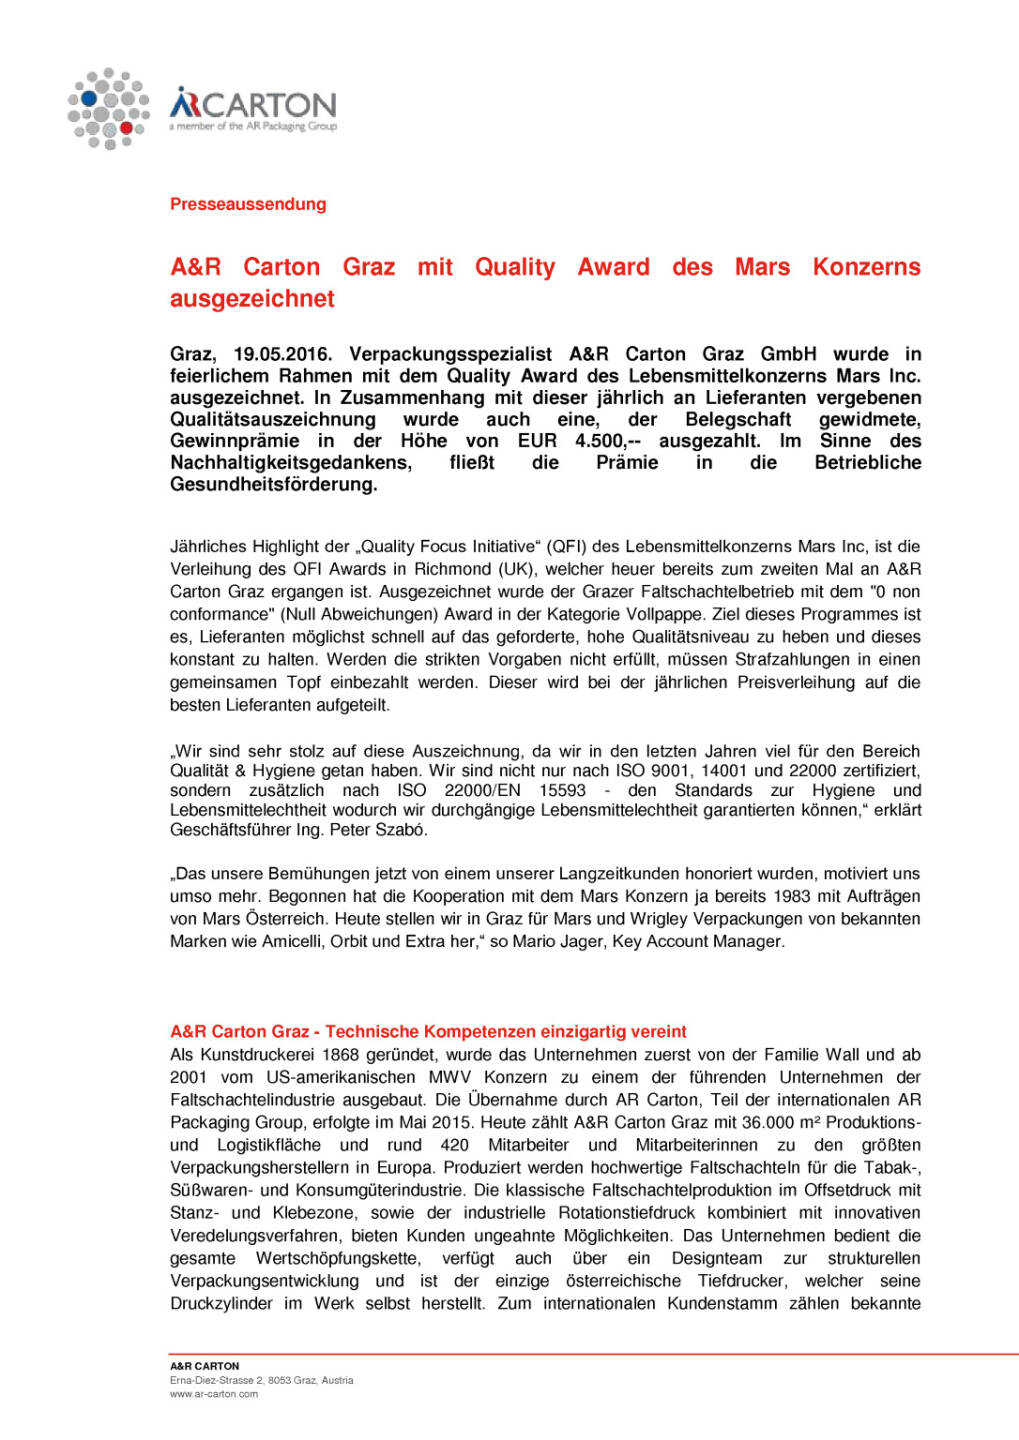 A&R Carton Graz mit Quality Award des Mars Konzerns ausgezeichnet, Seite 1/2, komplettes Dokument unter http://boerse-social.com/static/uploads/file_1093_ar_carton_graz_mit_quality_award_des_mars_konzerns_ausgezeichnet.pdf